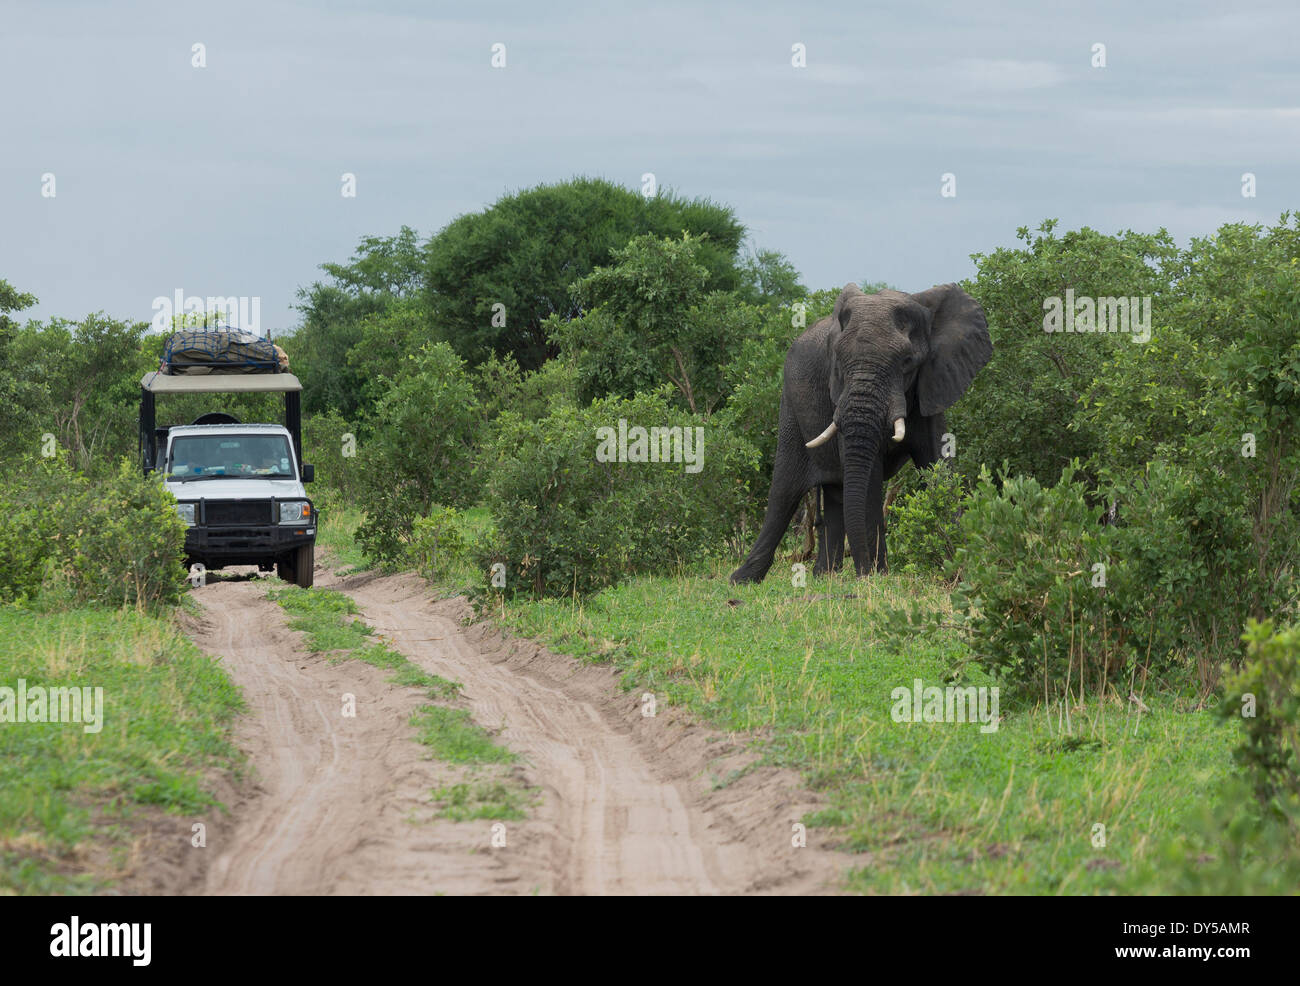 Afrikanischer Elefant (Loxodonta Africana) in der Nähe von Safari jeep Stockfoto